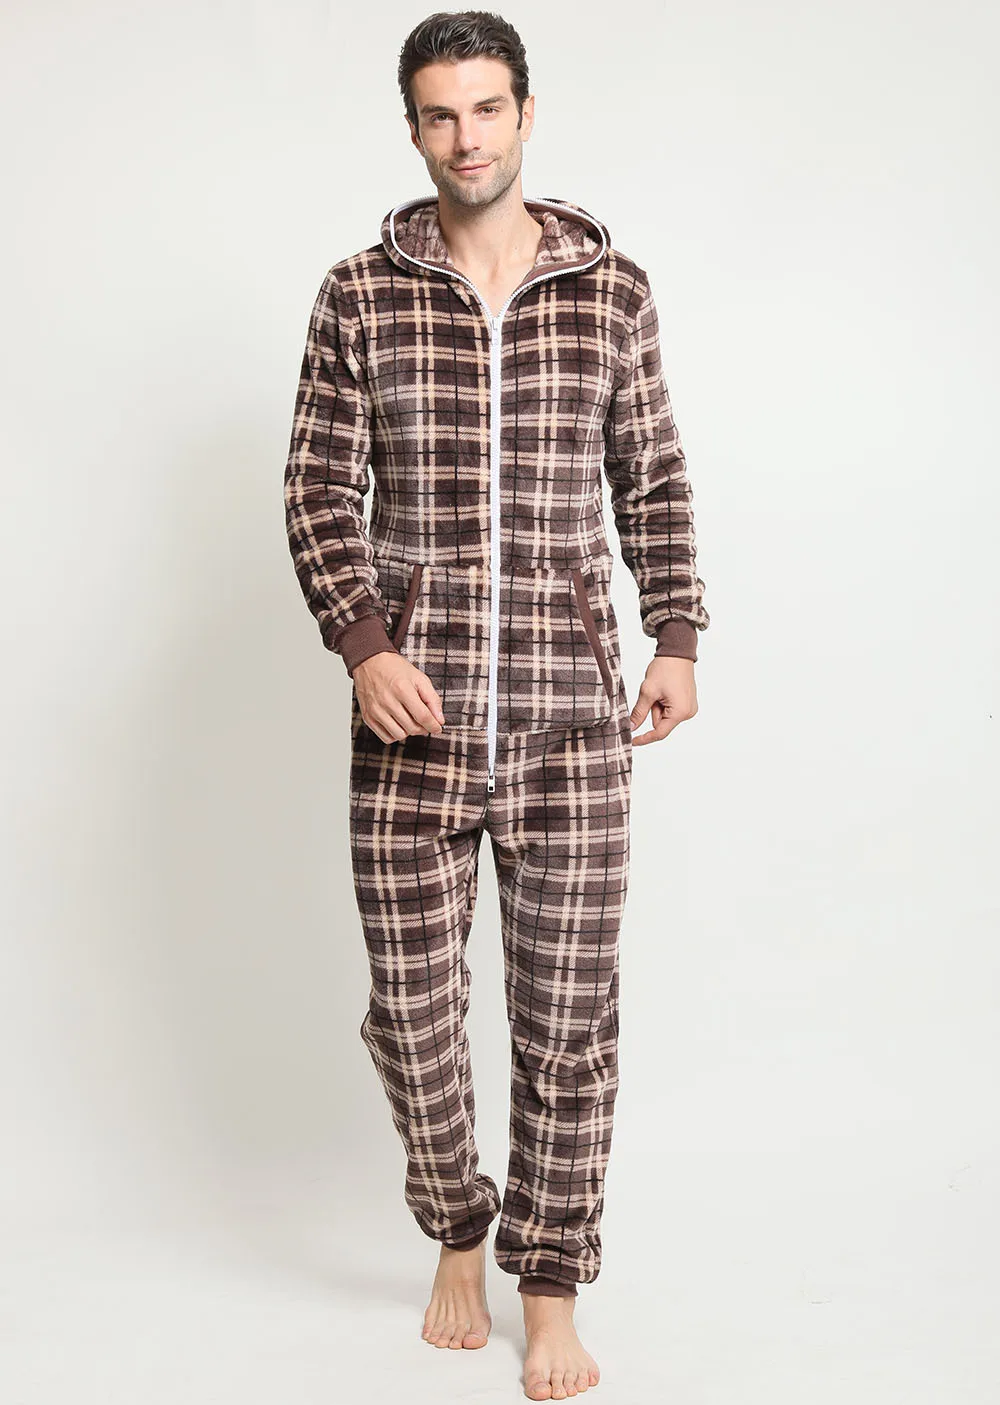 Flanela xadrez de flanela grossa masculina de inverno Desgaste caseiro de um macacão legal de verão casual para dormir pijamas